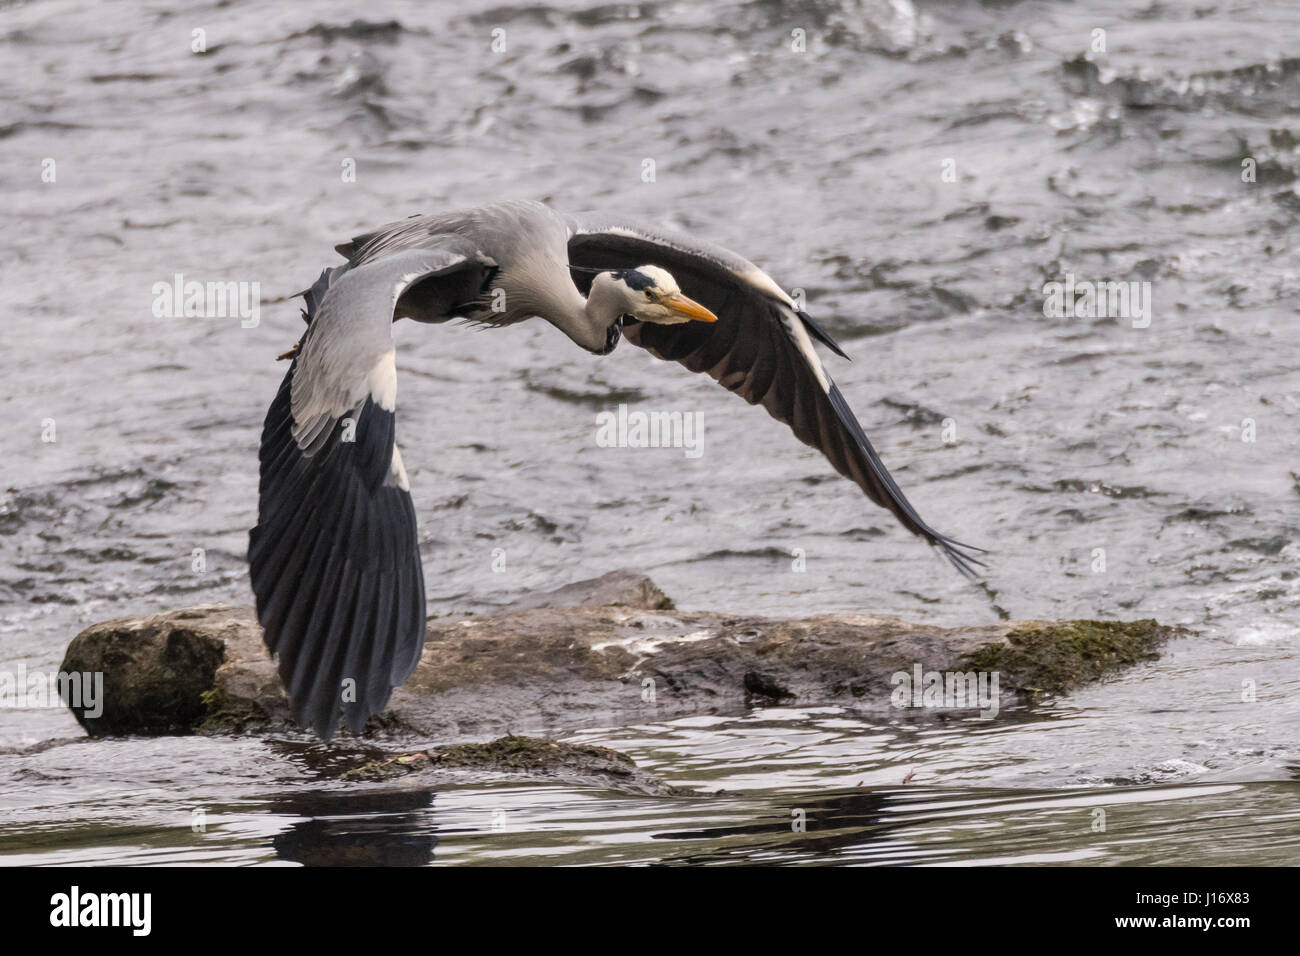 Héron cendré (Ardea cinerea) en vol au dessus de la rivière. Grand oiseau de la famille des Ardeidae, quelques instants après son envol Banque D'Images